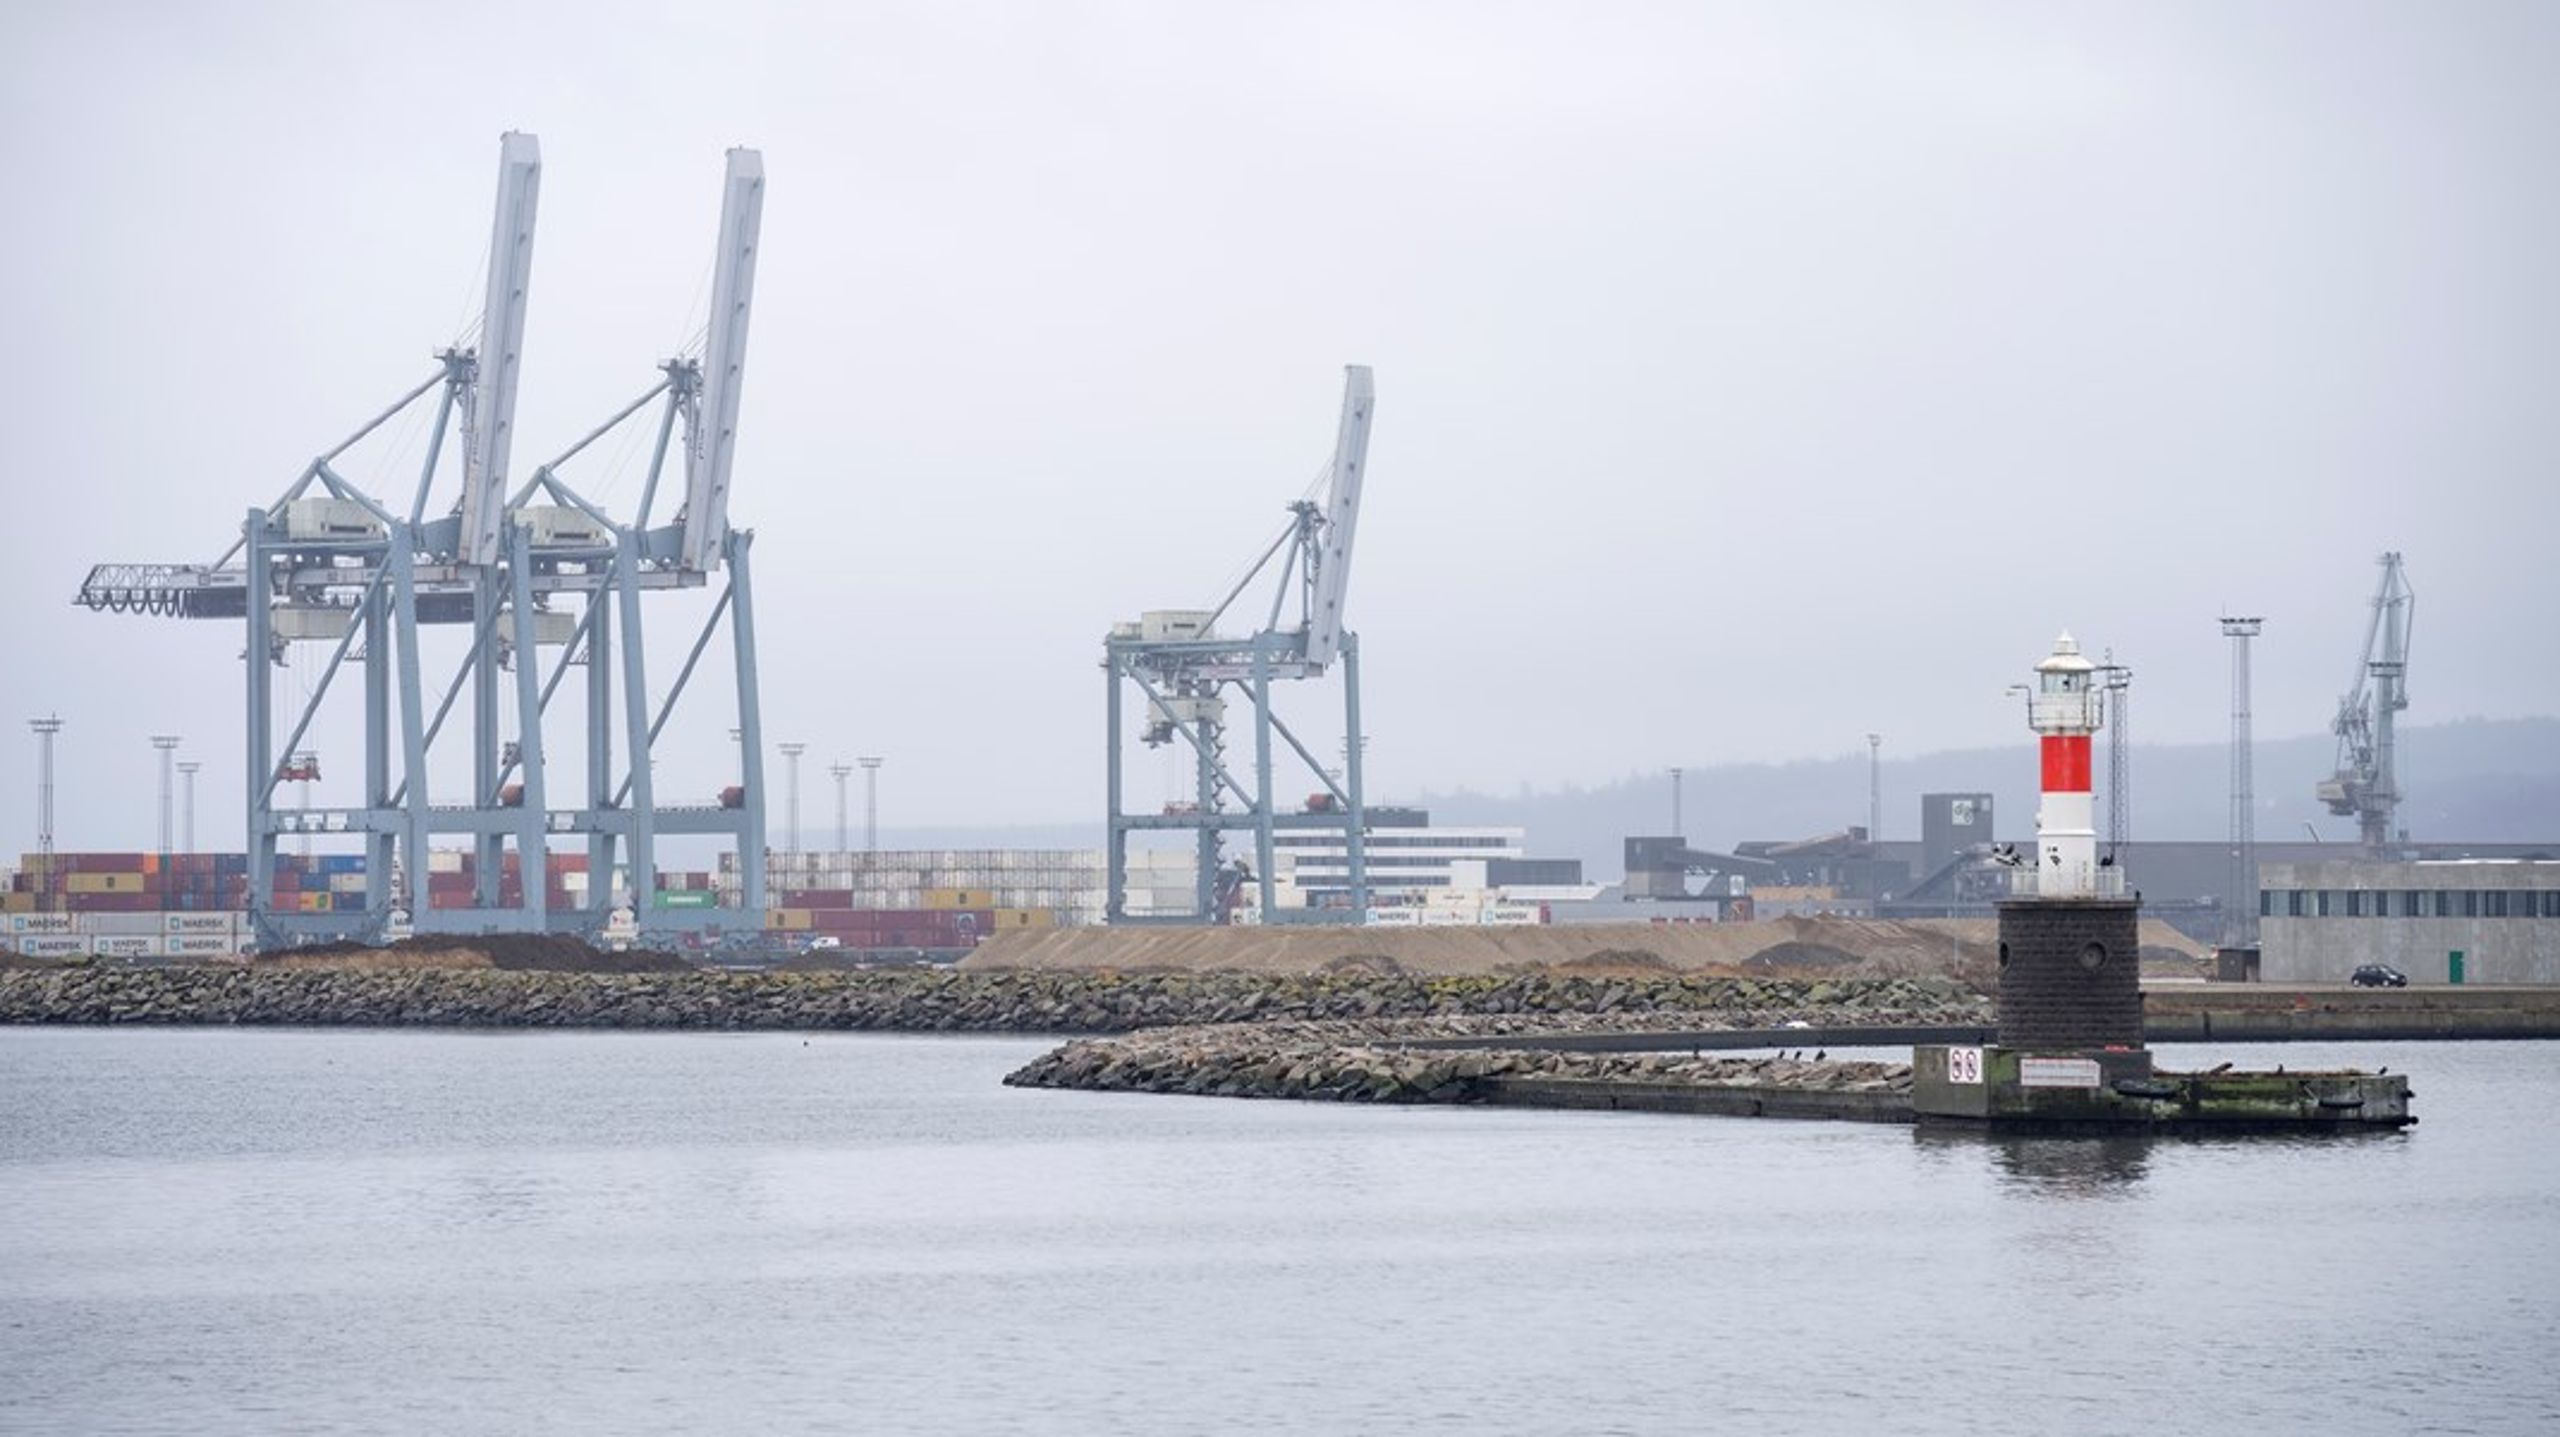 De danske havne kommer snart til at mangle plads. Det kalder på løsninger nu, for det tager tid at udvikle havnes infrastruktur, skriver Tine Kirk.